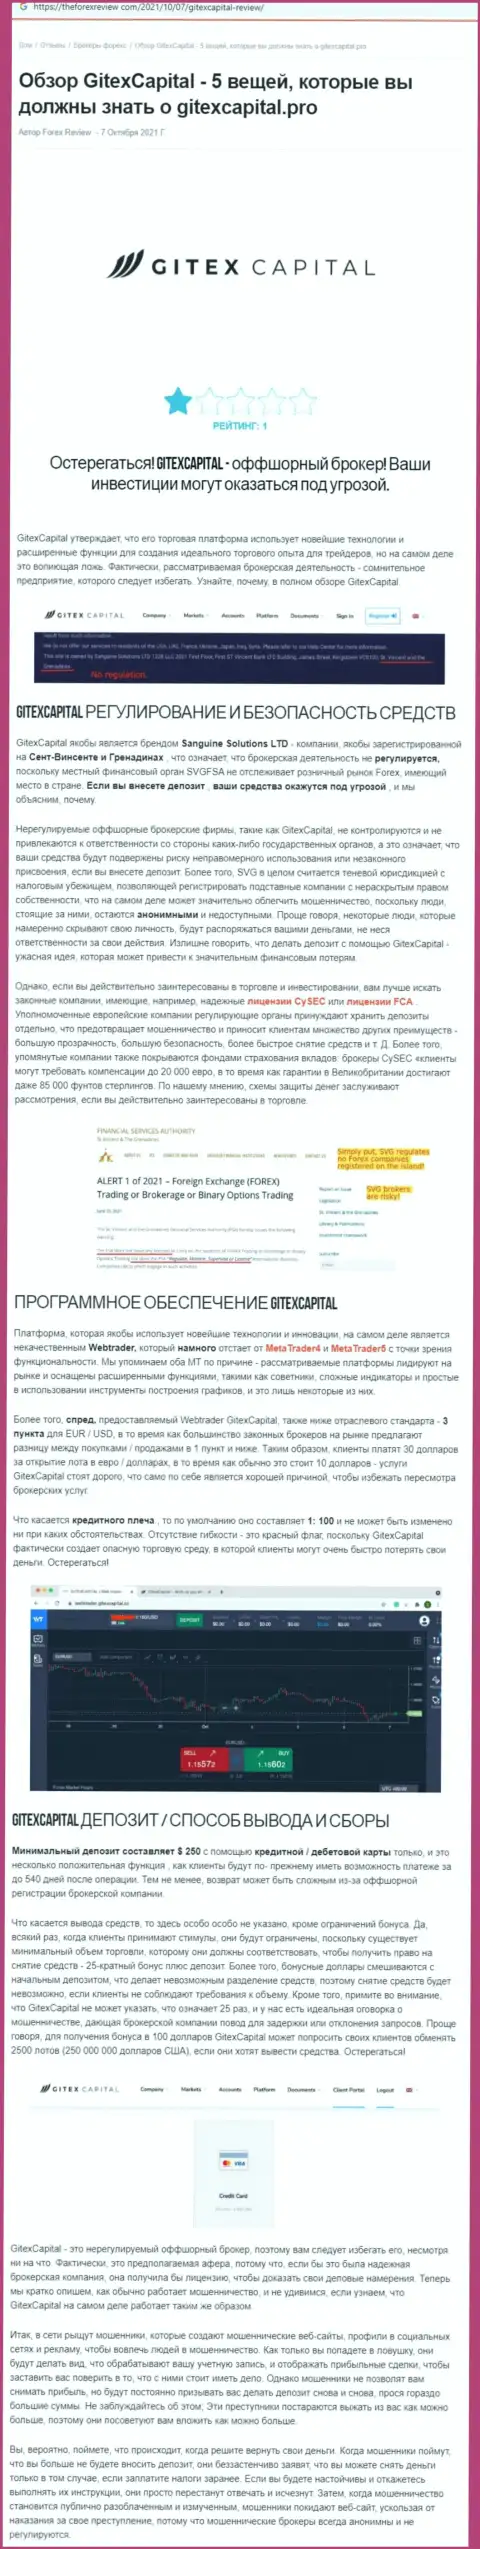 GitexCapital Pro - это ОБМАН !!! Комментарий автора обзорной статьи